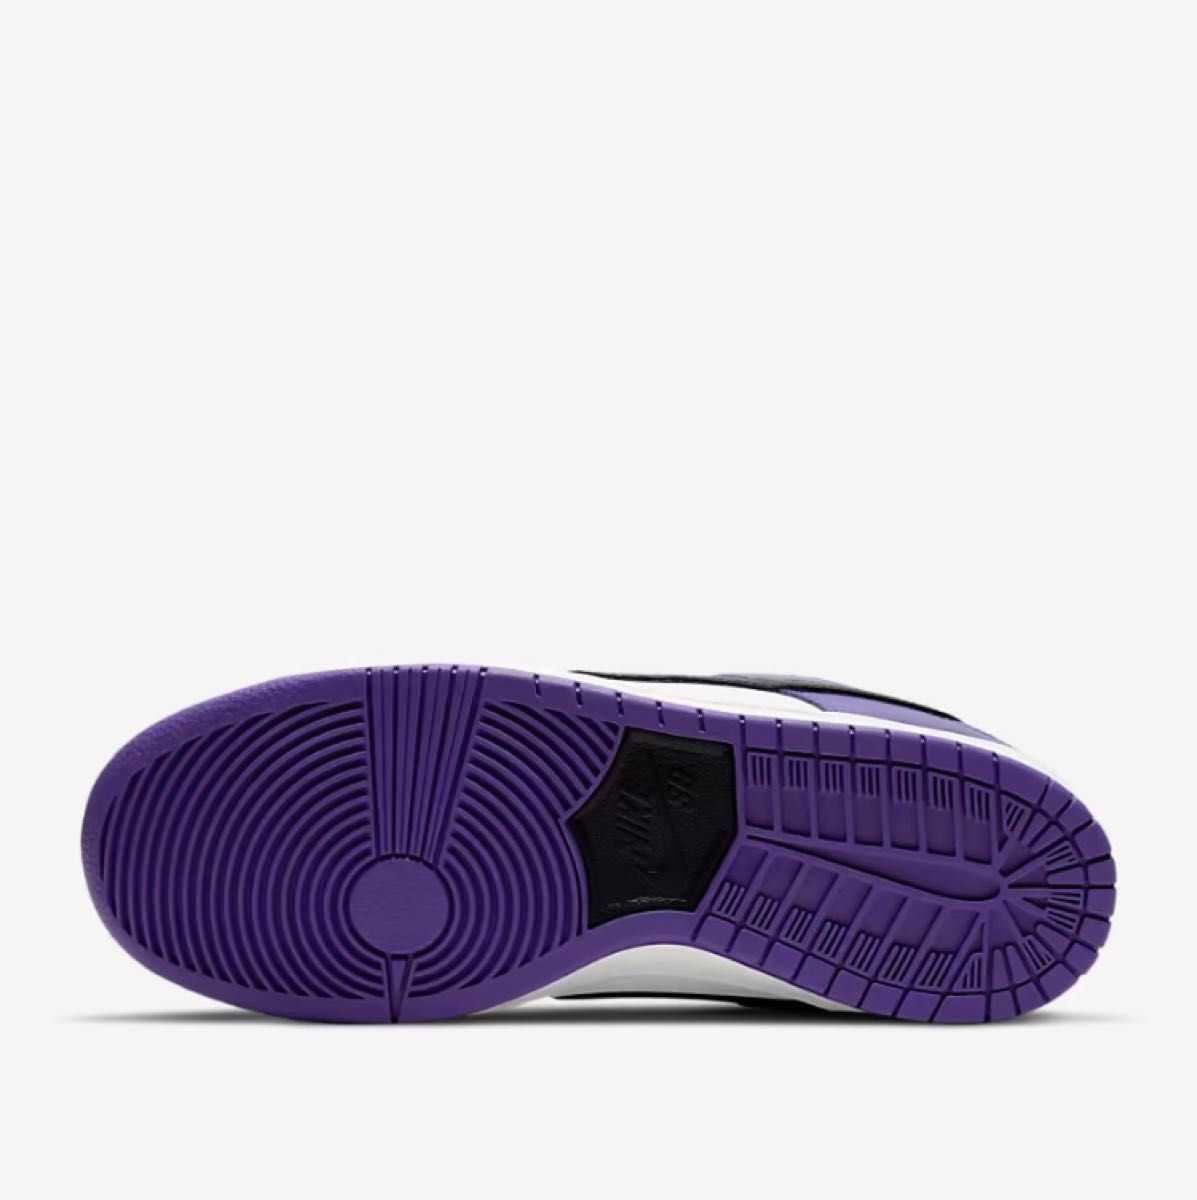 Nike SB Dunk Low Pro "Court Purple"ナイキ SB ダンク ロー プロ "コートパープル"